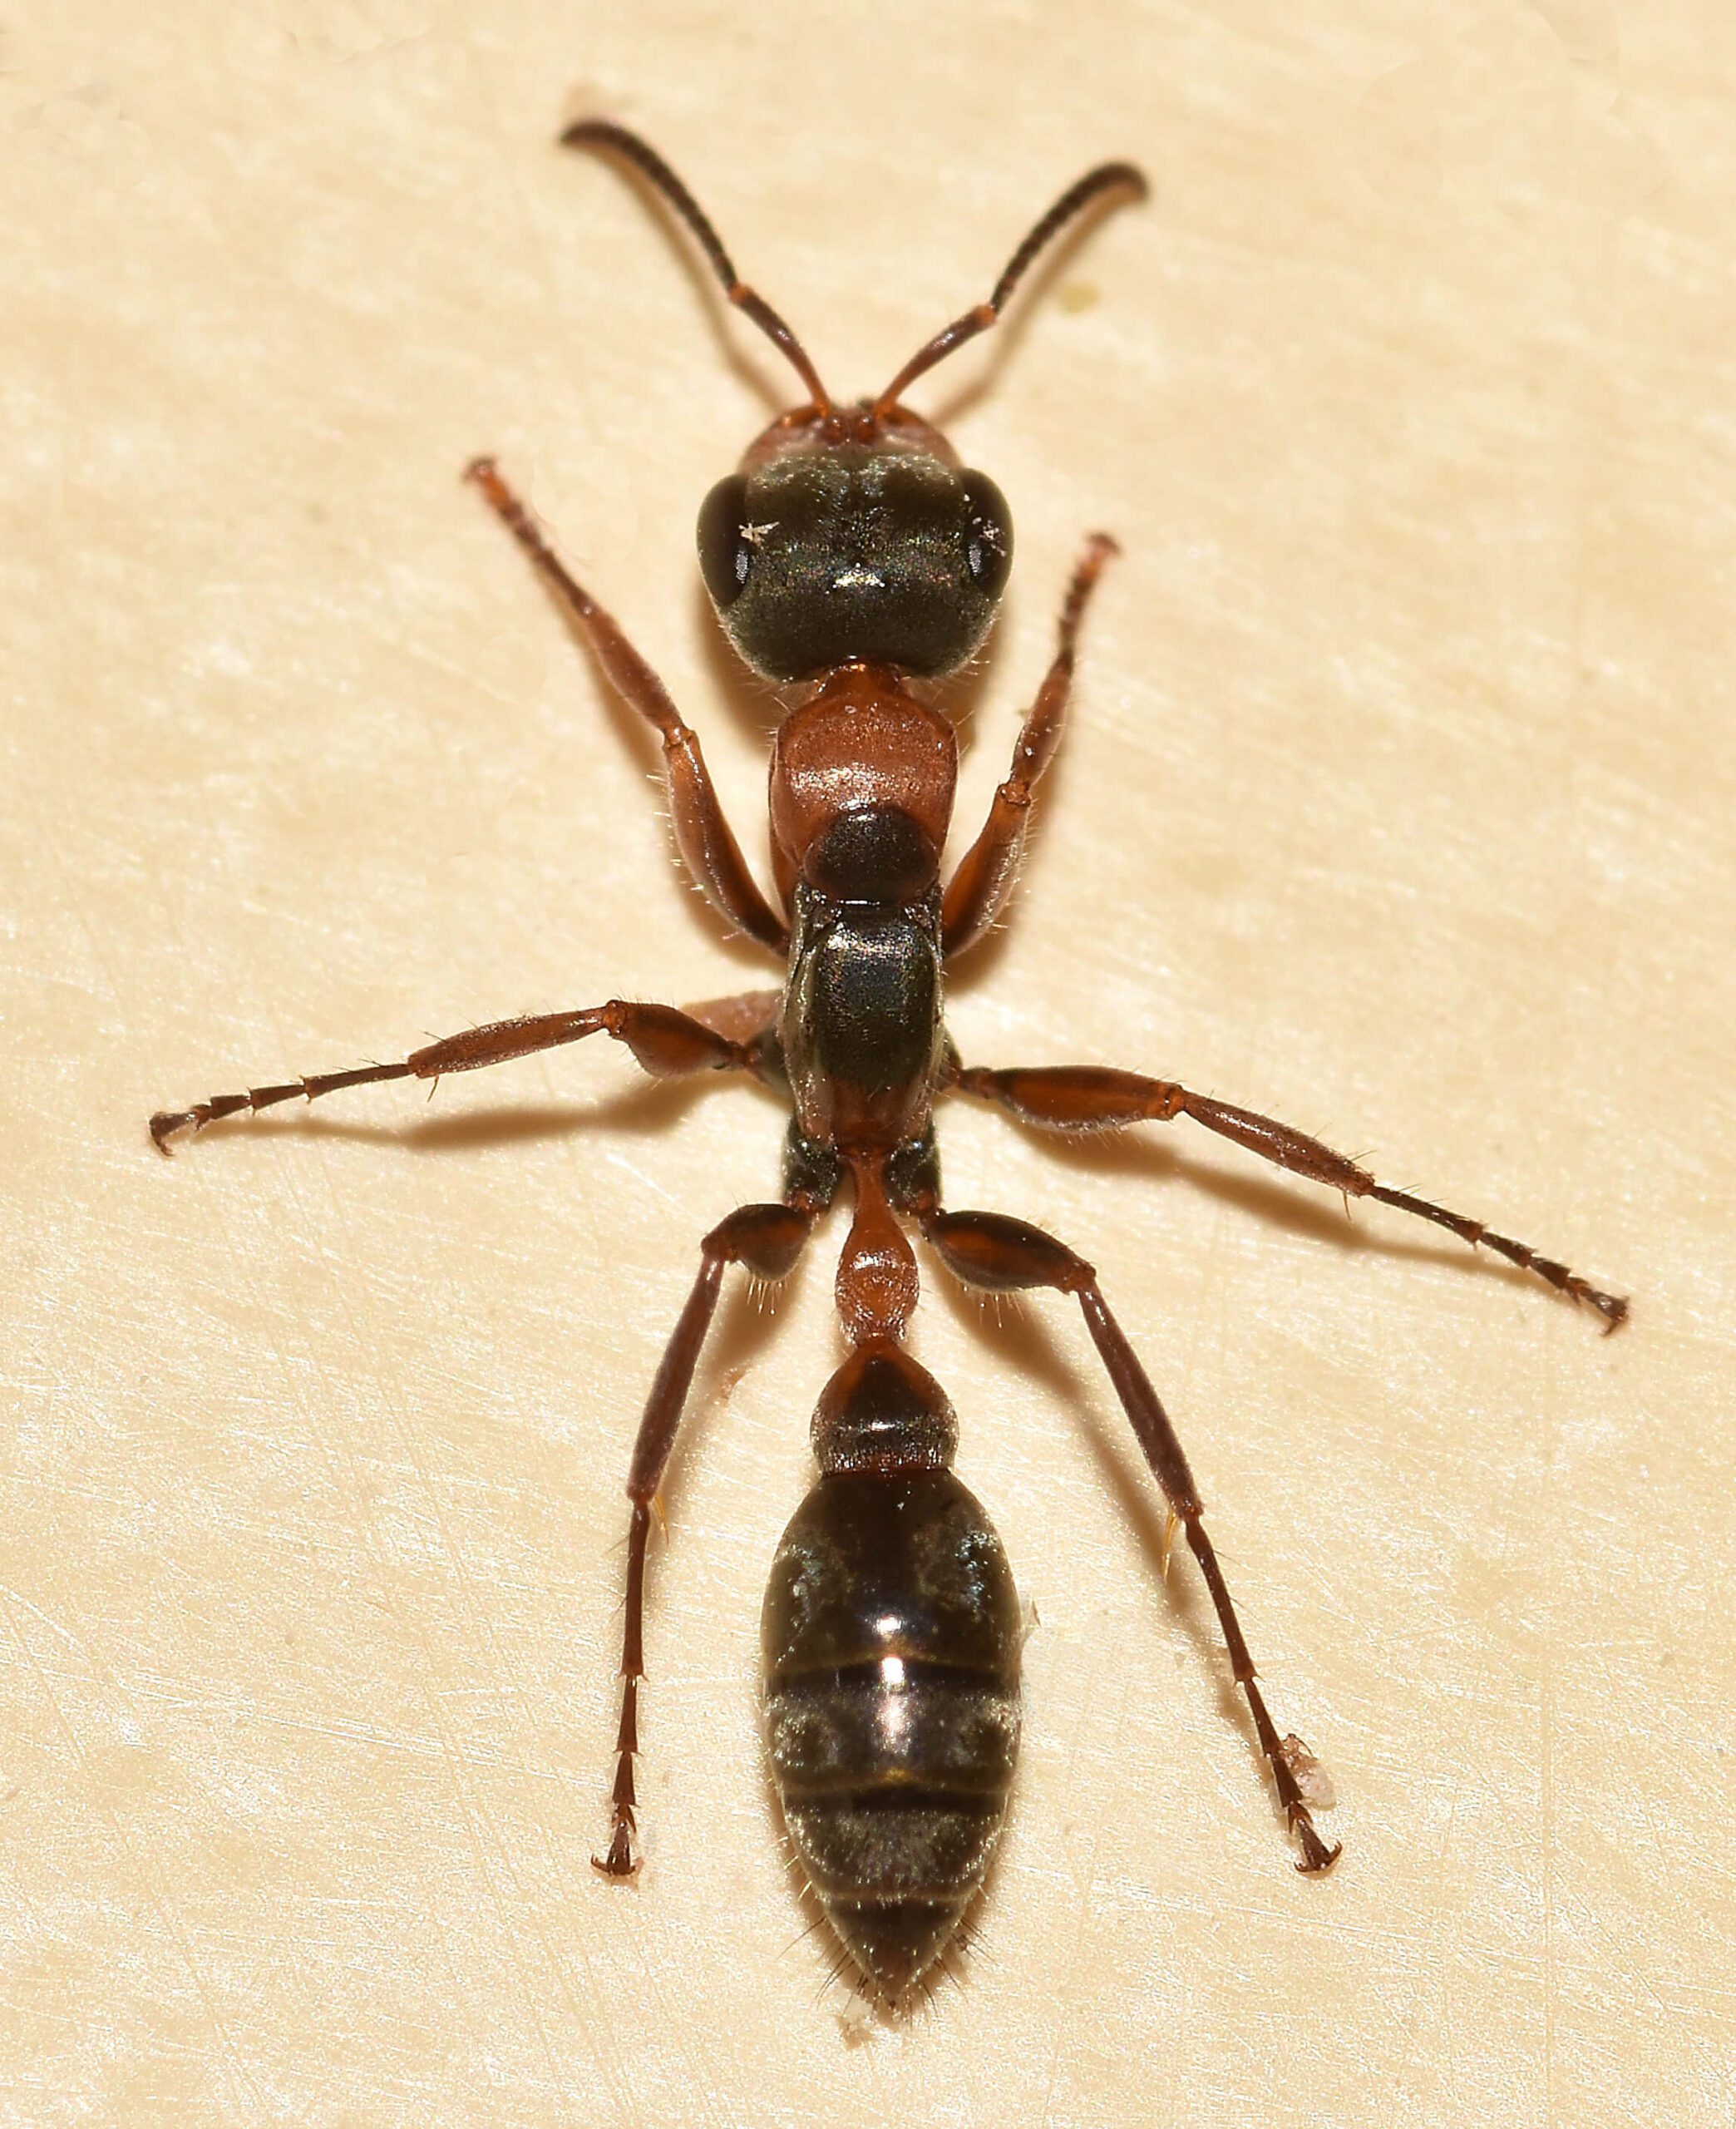 Twig ant